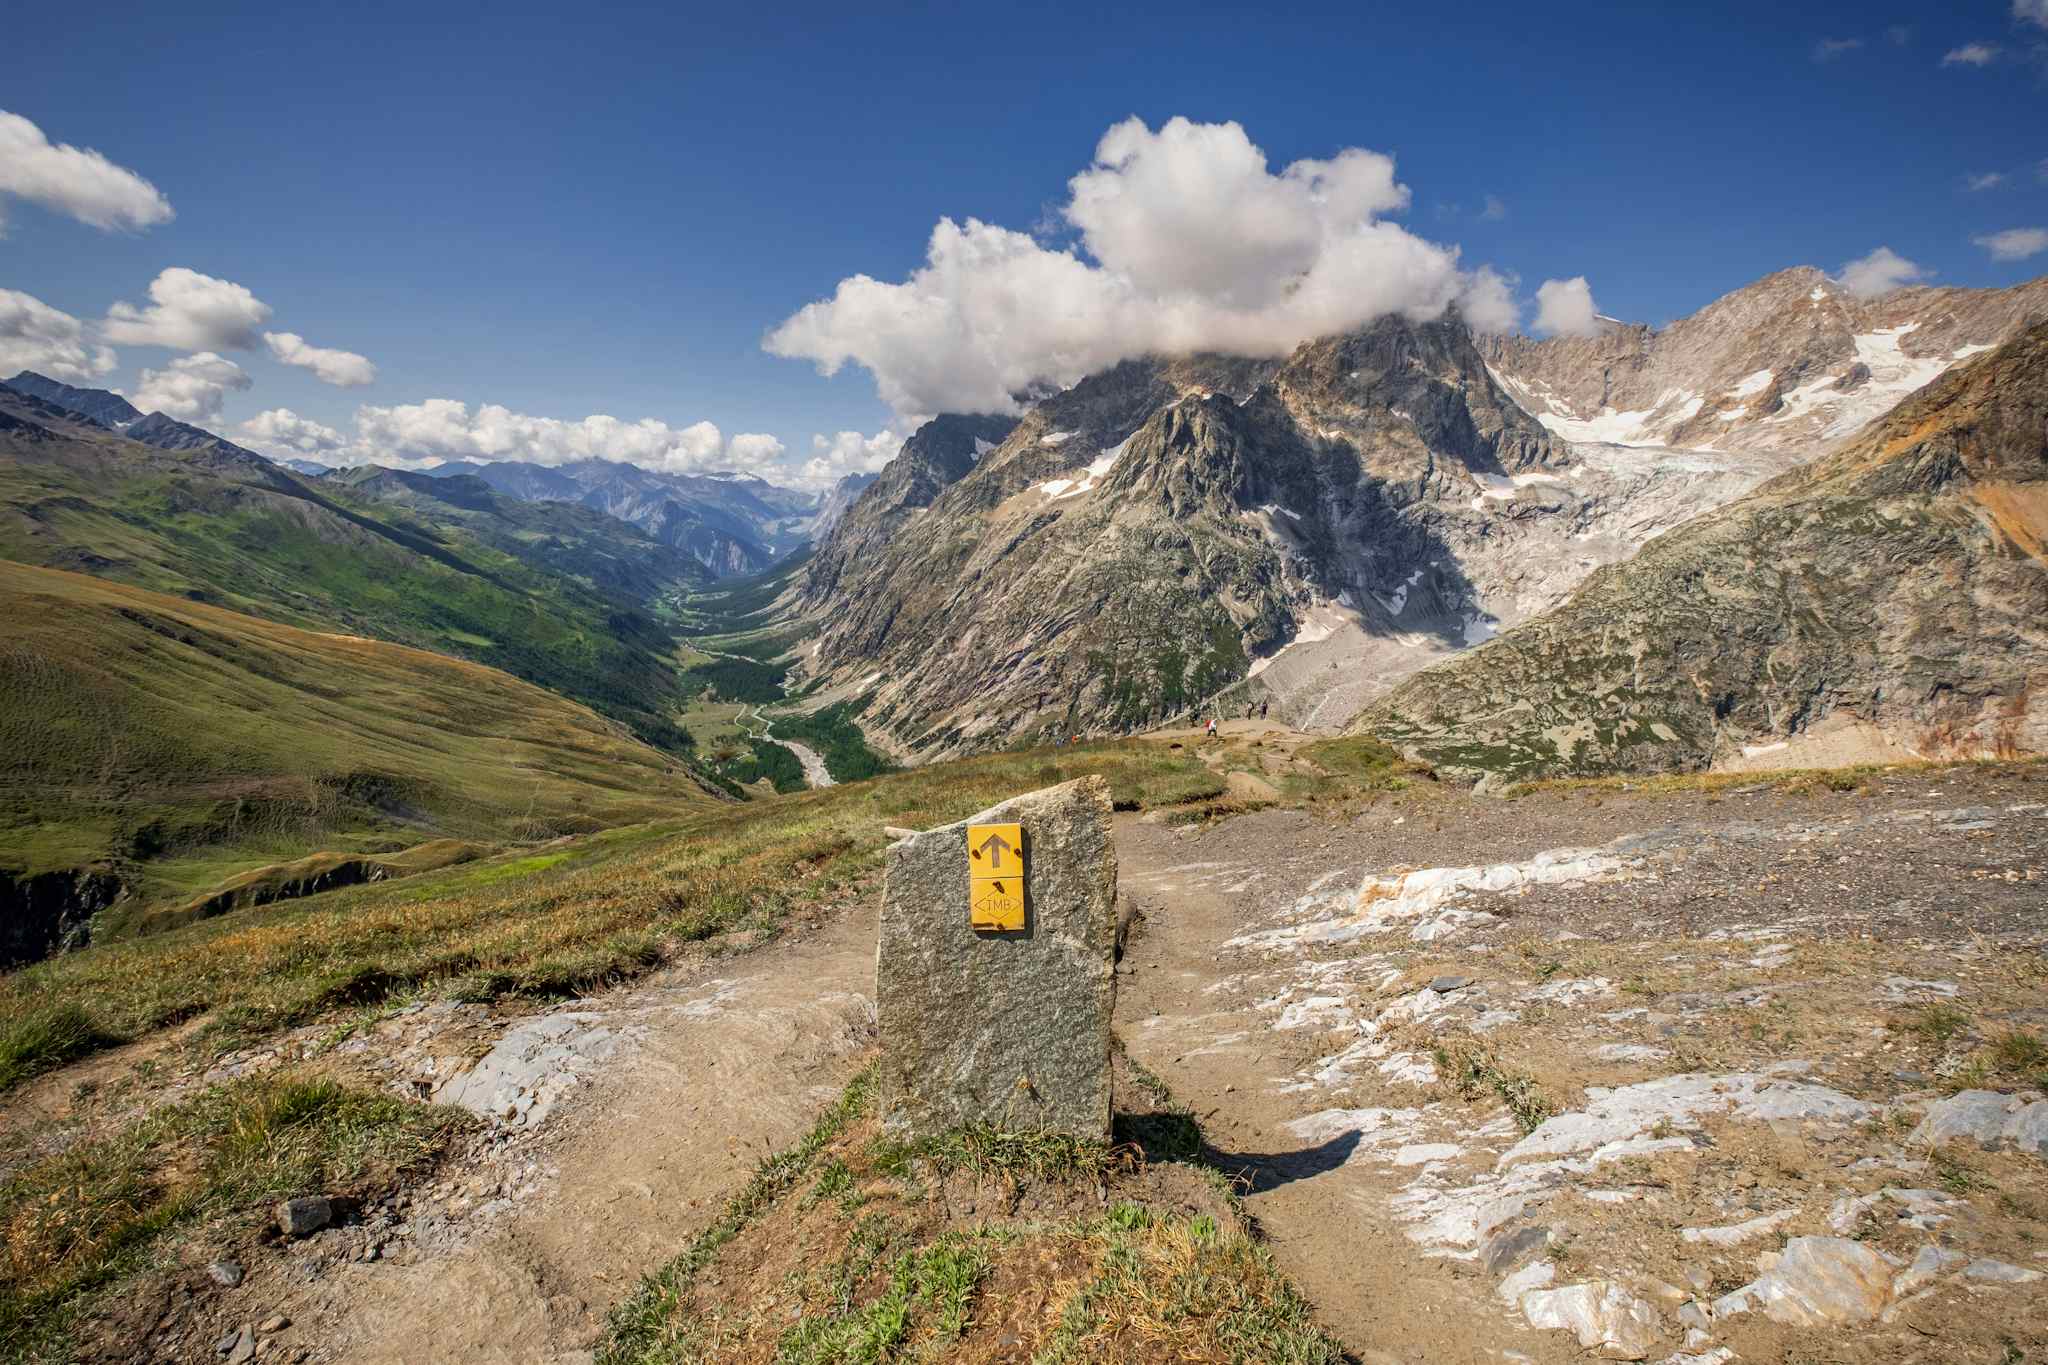 Col du Bonhomme on the Tour du Mont Blanc, France & Switzerland. Photo: Host/Altai France